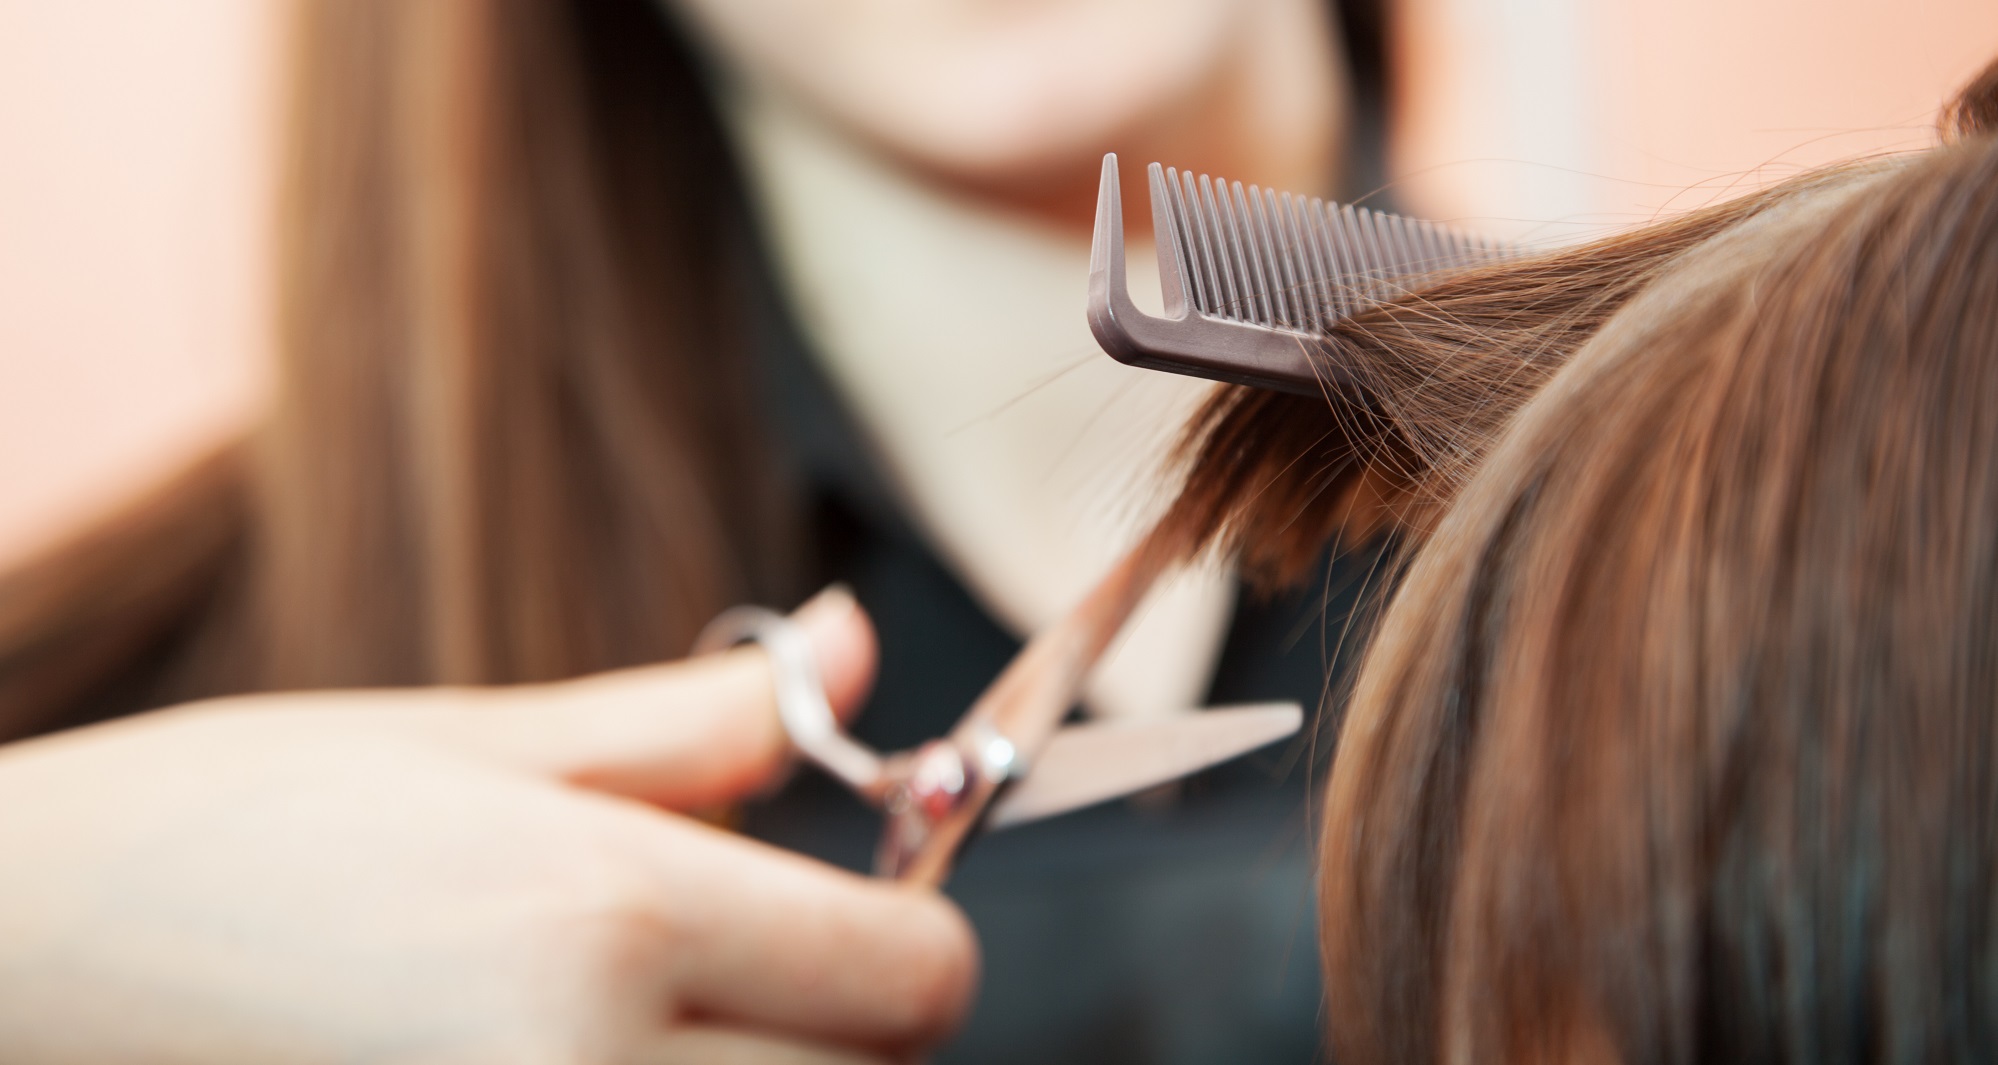 Une adolescente voit rouge après son passage chez le coiffeur